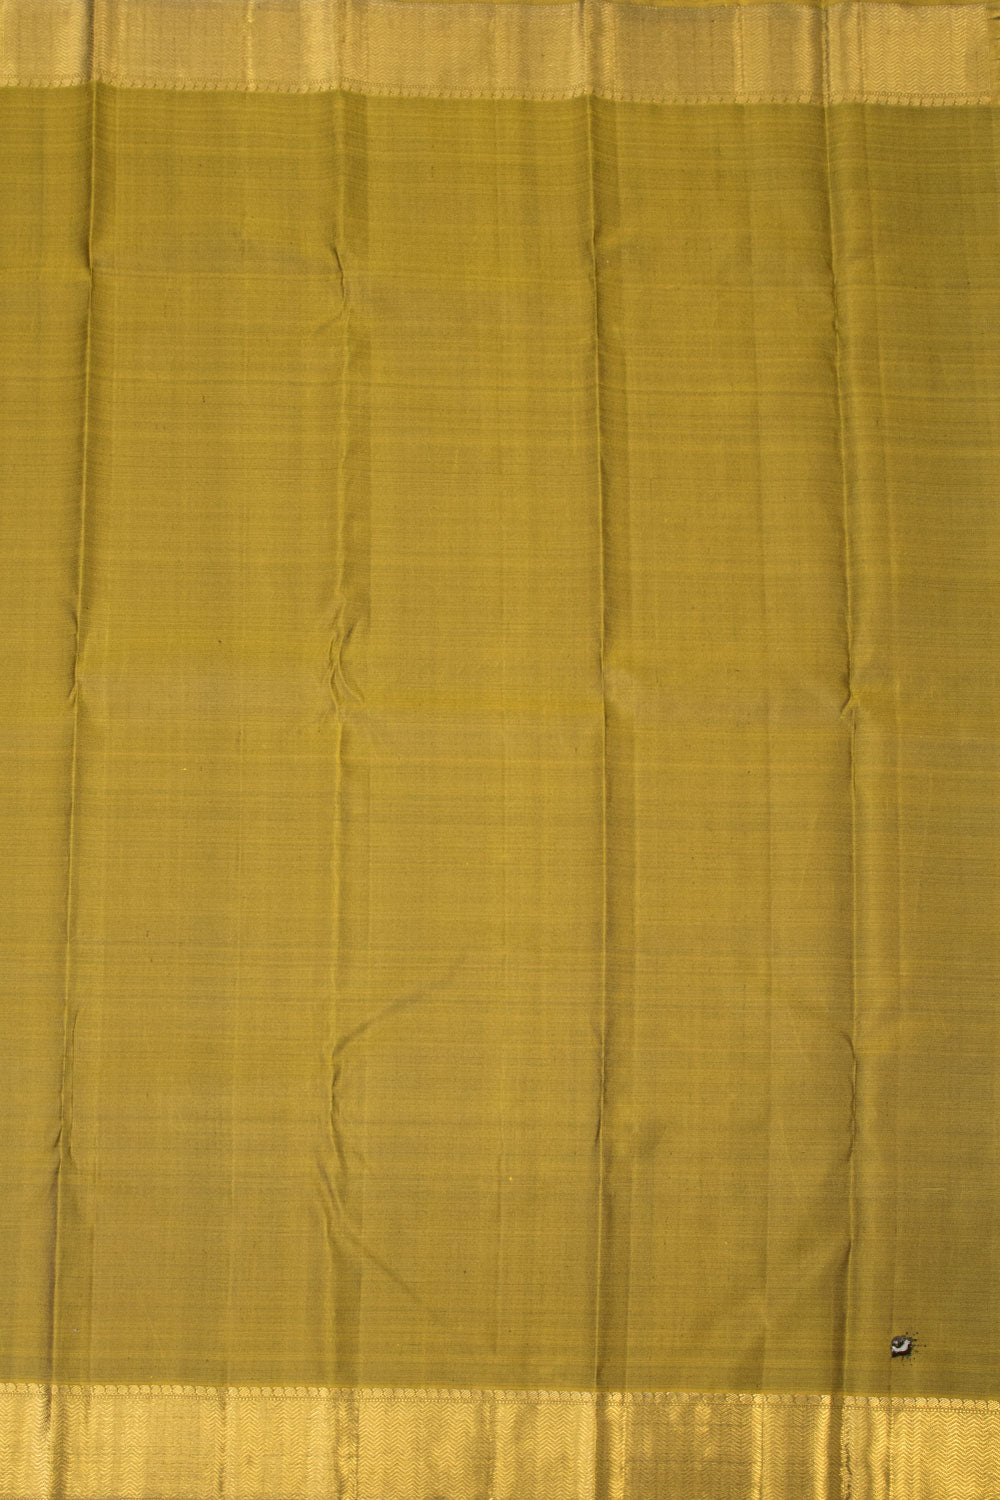 Purple Handloom Kanjivaram Silk Saree - Avishya